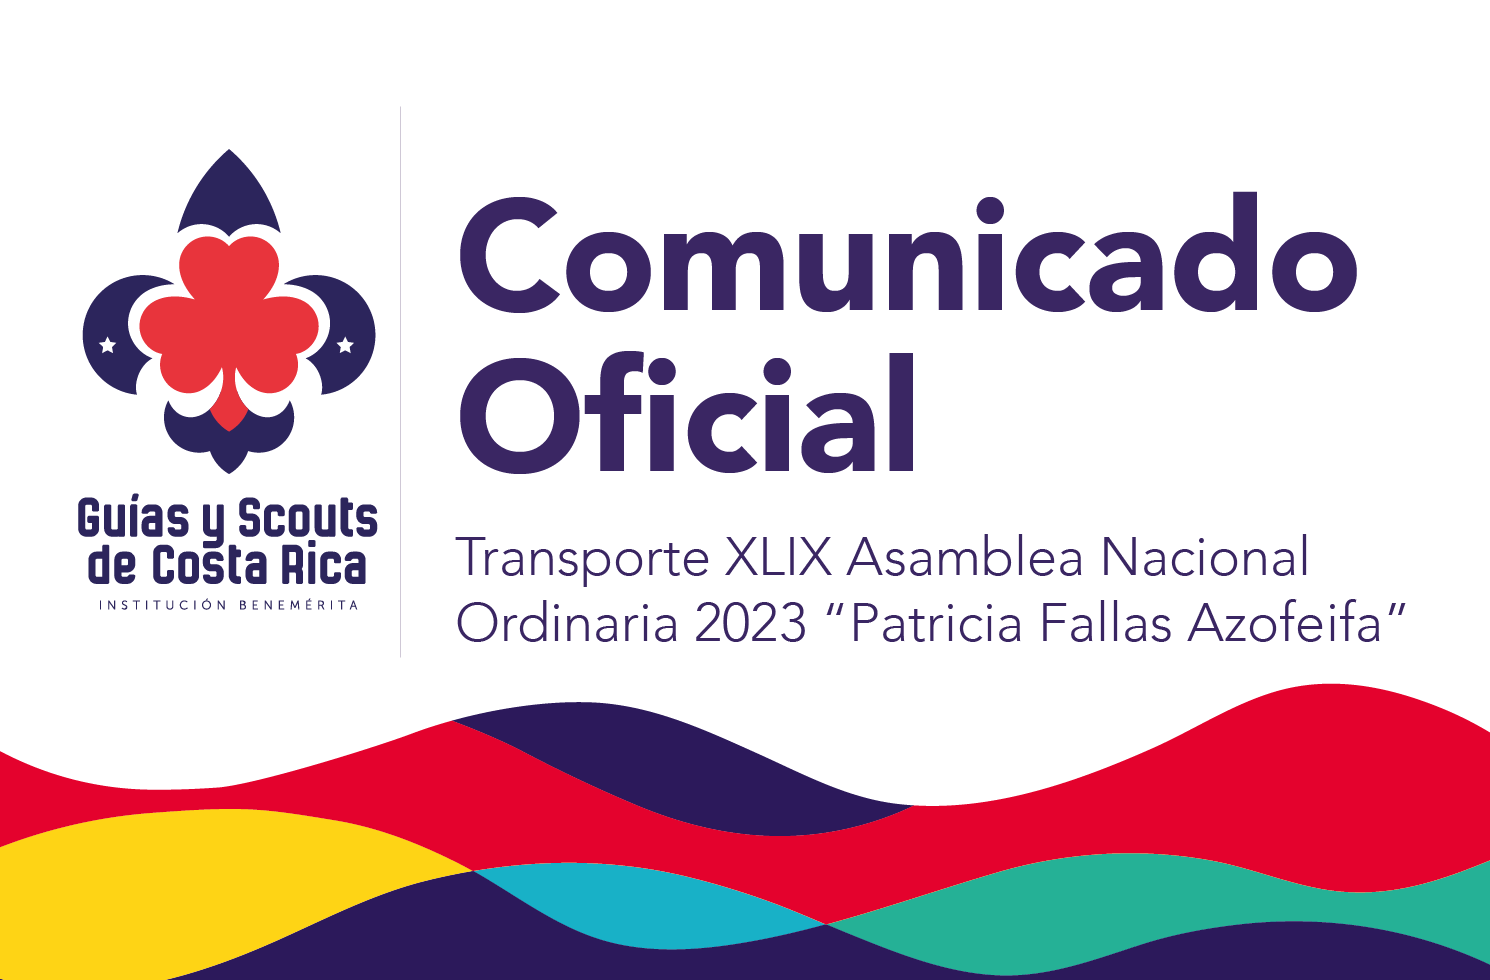 Transporte XLIV Asamblea Nacional Ordinaria 2023 “Patricia Fallas Azofeifa”